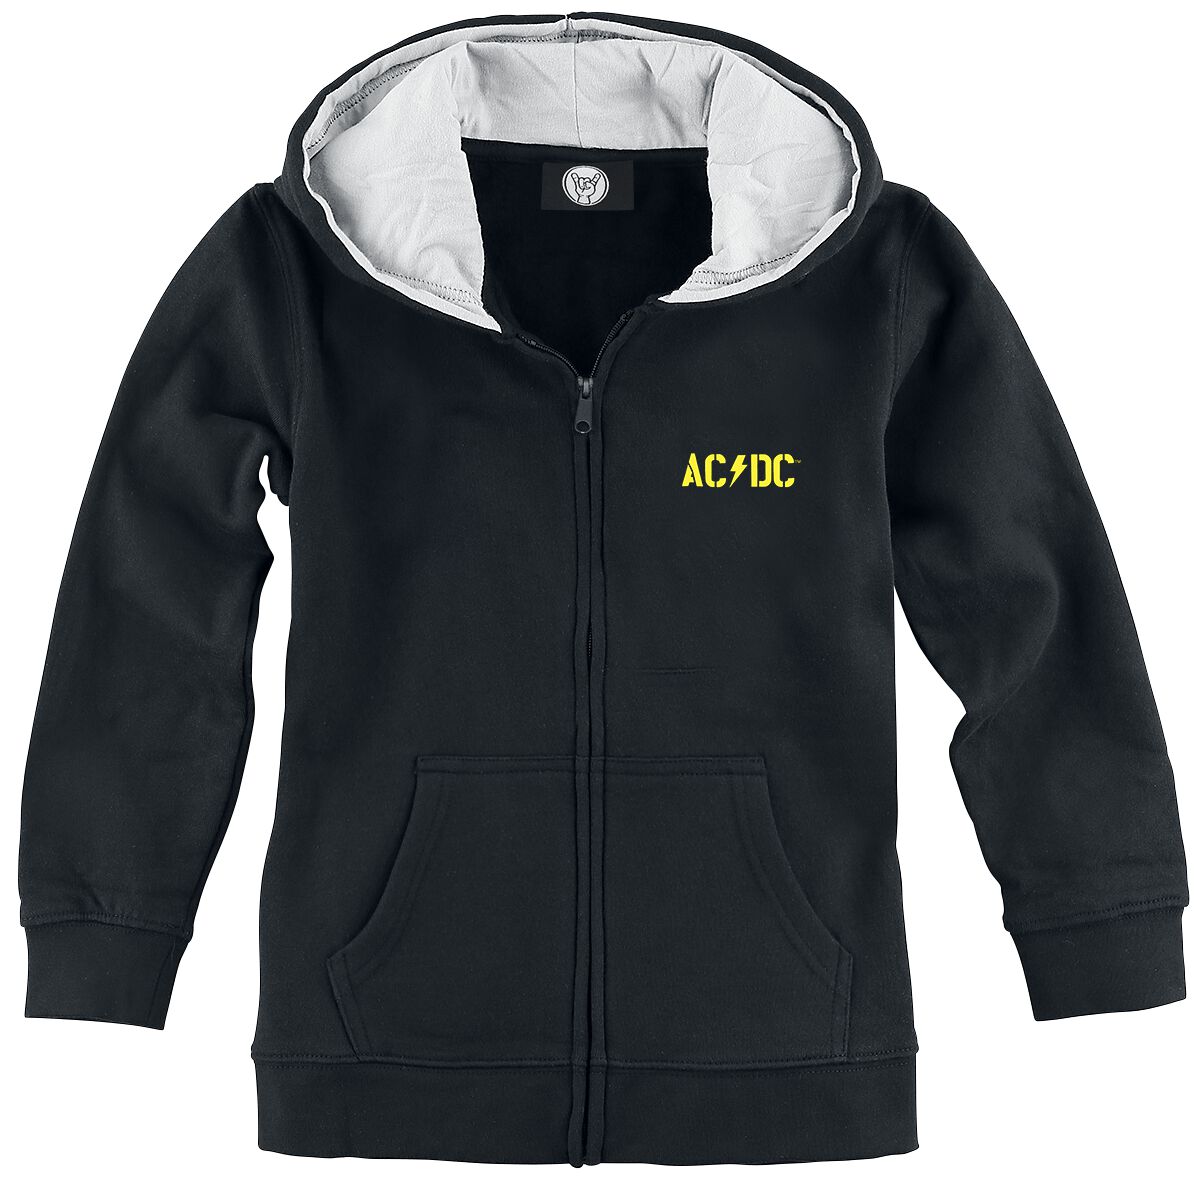 Vestes à capuches pour enfants de AC/DC - Metal-Kids - PWR UP - 104 - pour filles & garçonse - noir